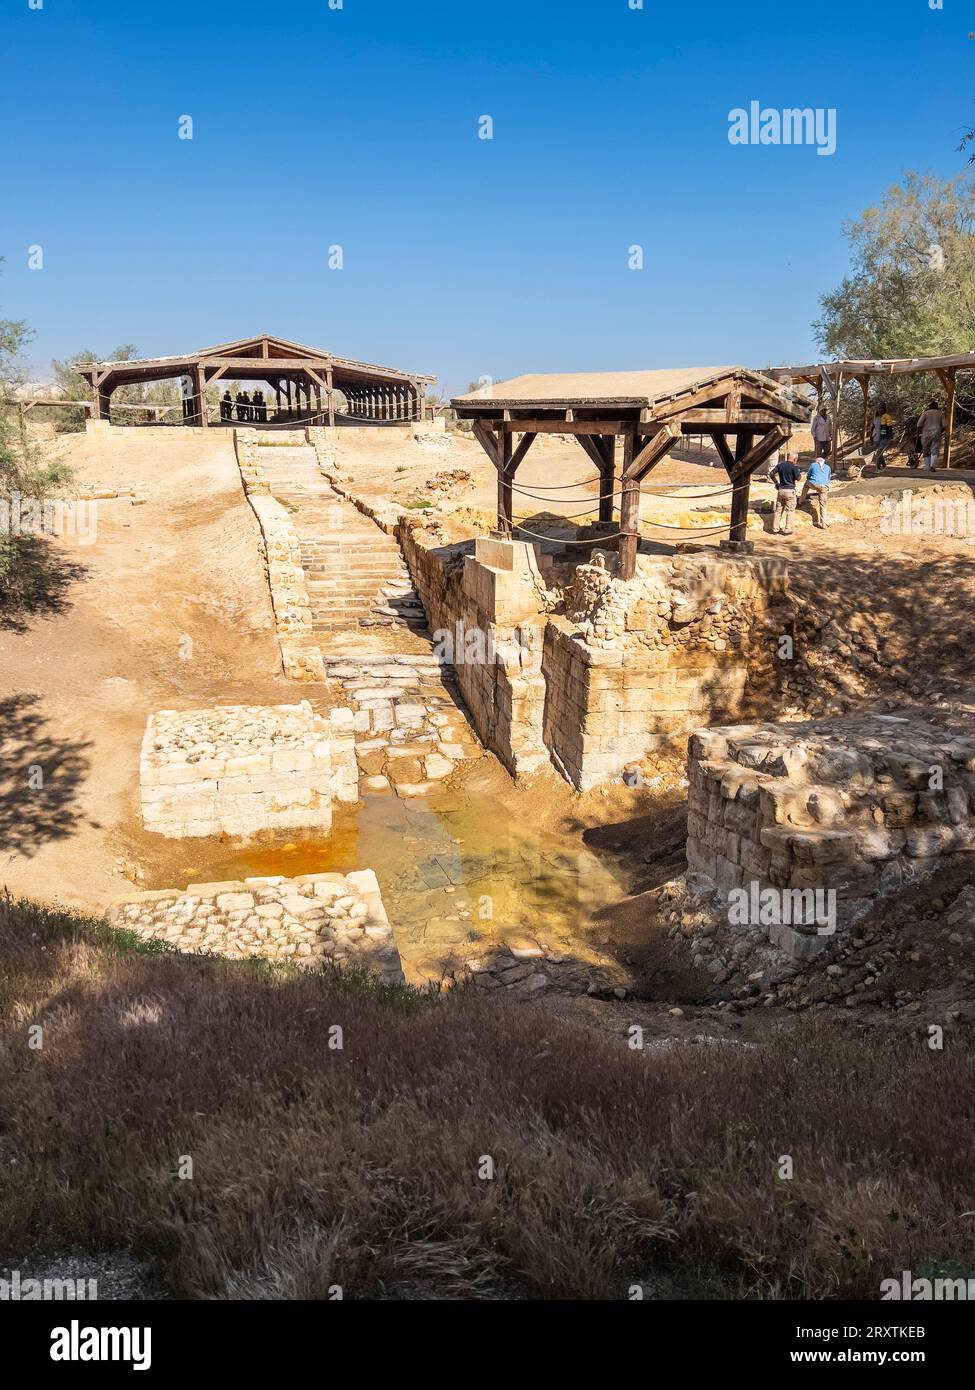 Al-Maghtas (Béthanie au-delà du Jourdain), le site où Jésus aurait été baptisé par Jean-Baptiste, Jordanie, Moyen-Orient Banque D'Images